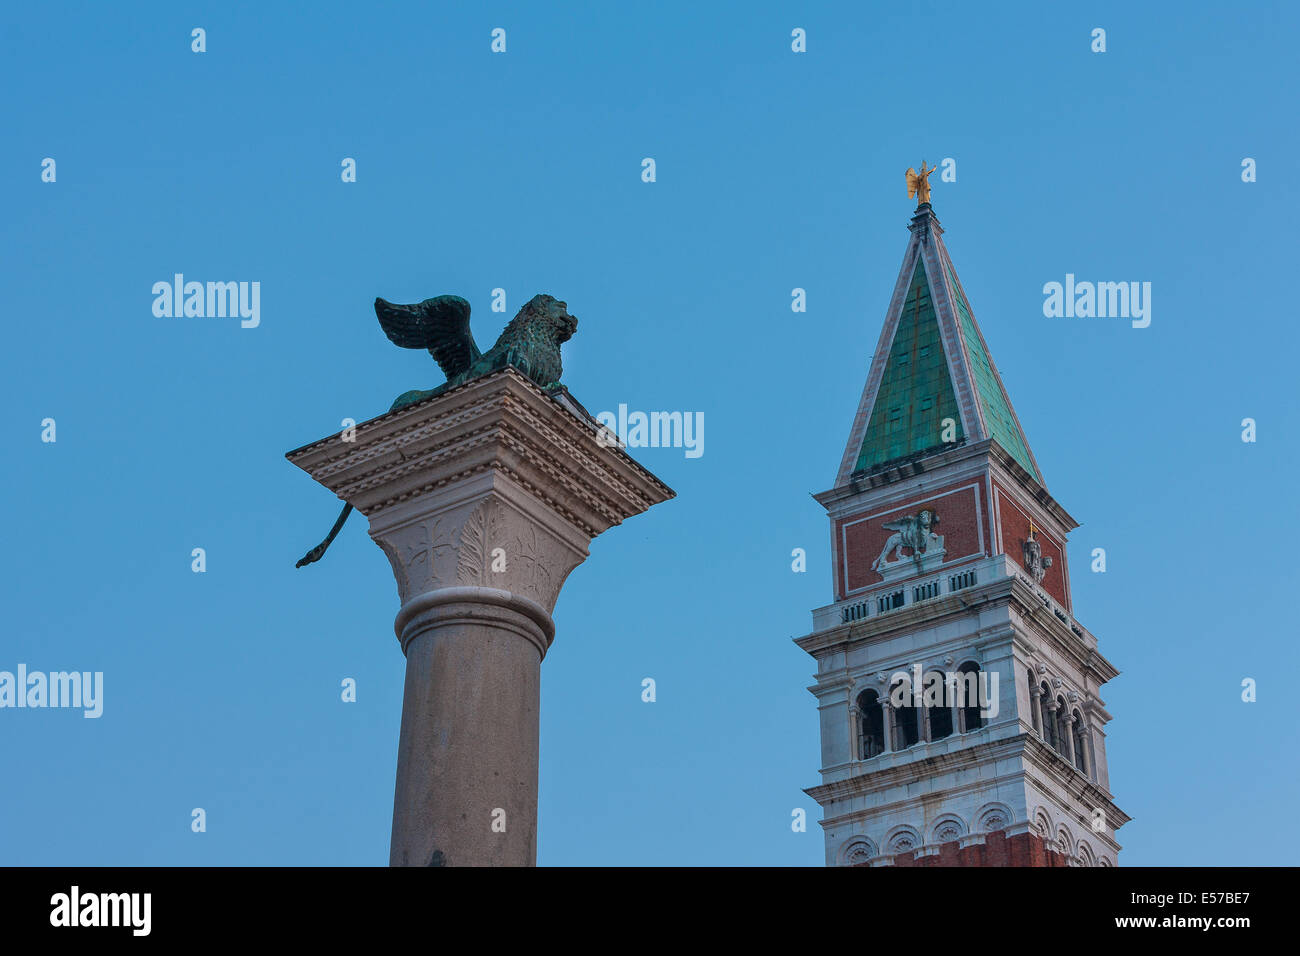 Venecia. El león y el campanario de la plaza San Marco. Foto de stock